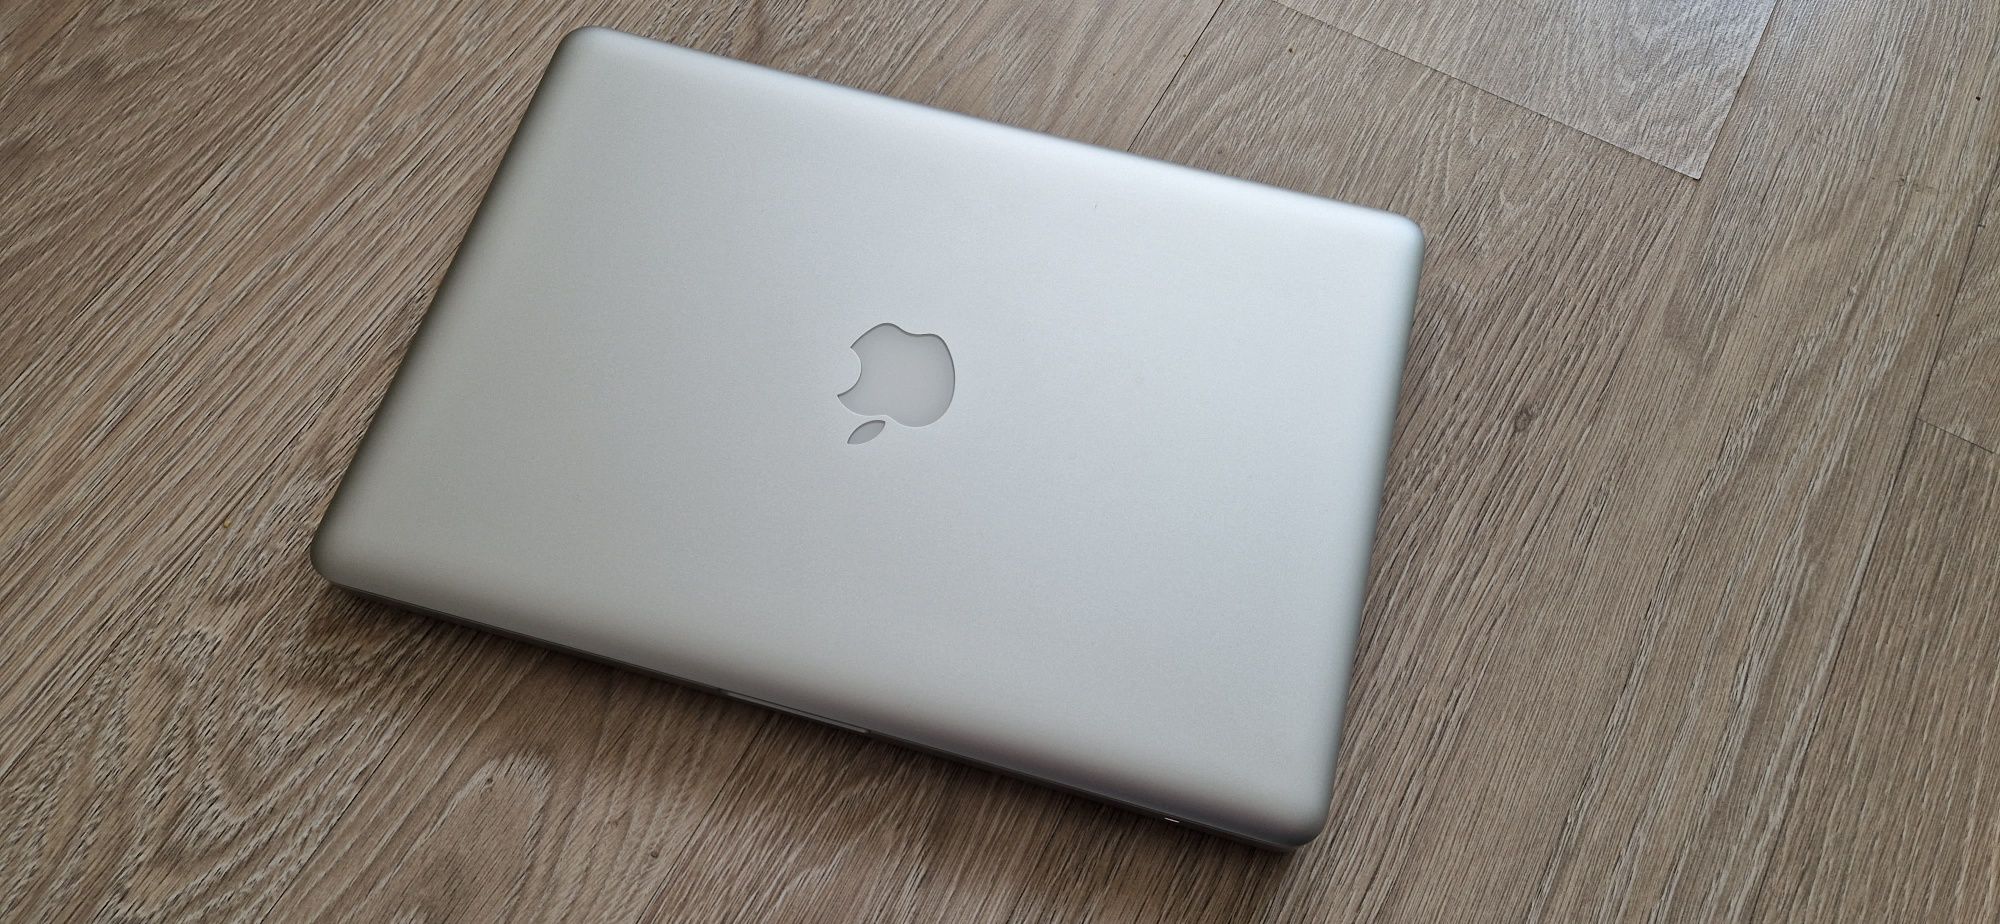 Vand Apple MacBook Pro 13 inch-original US